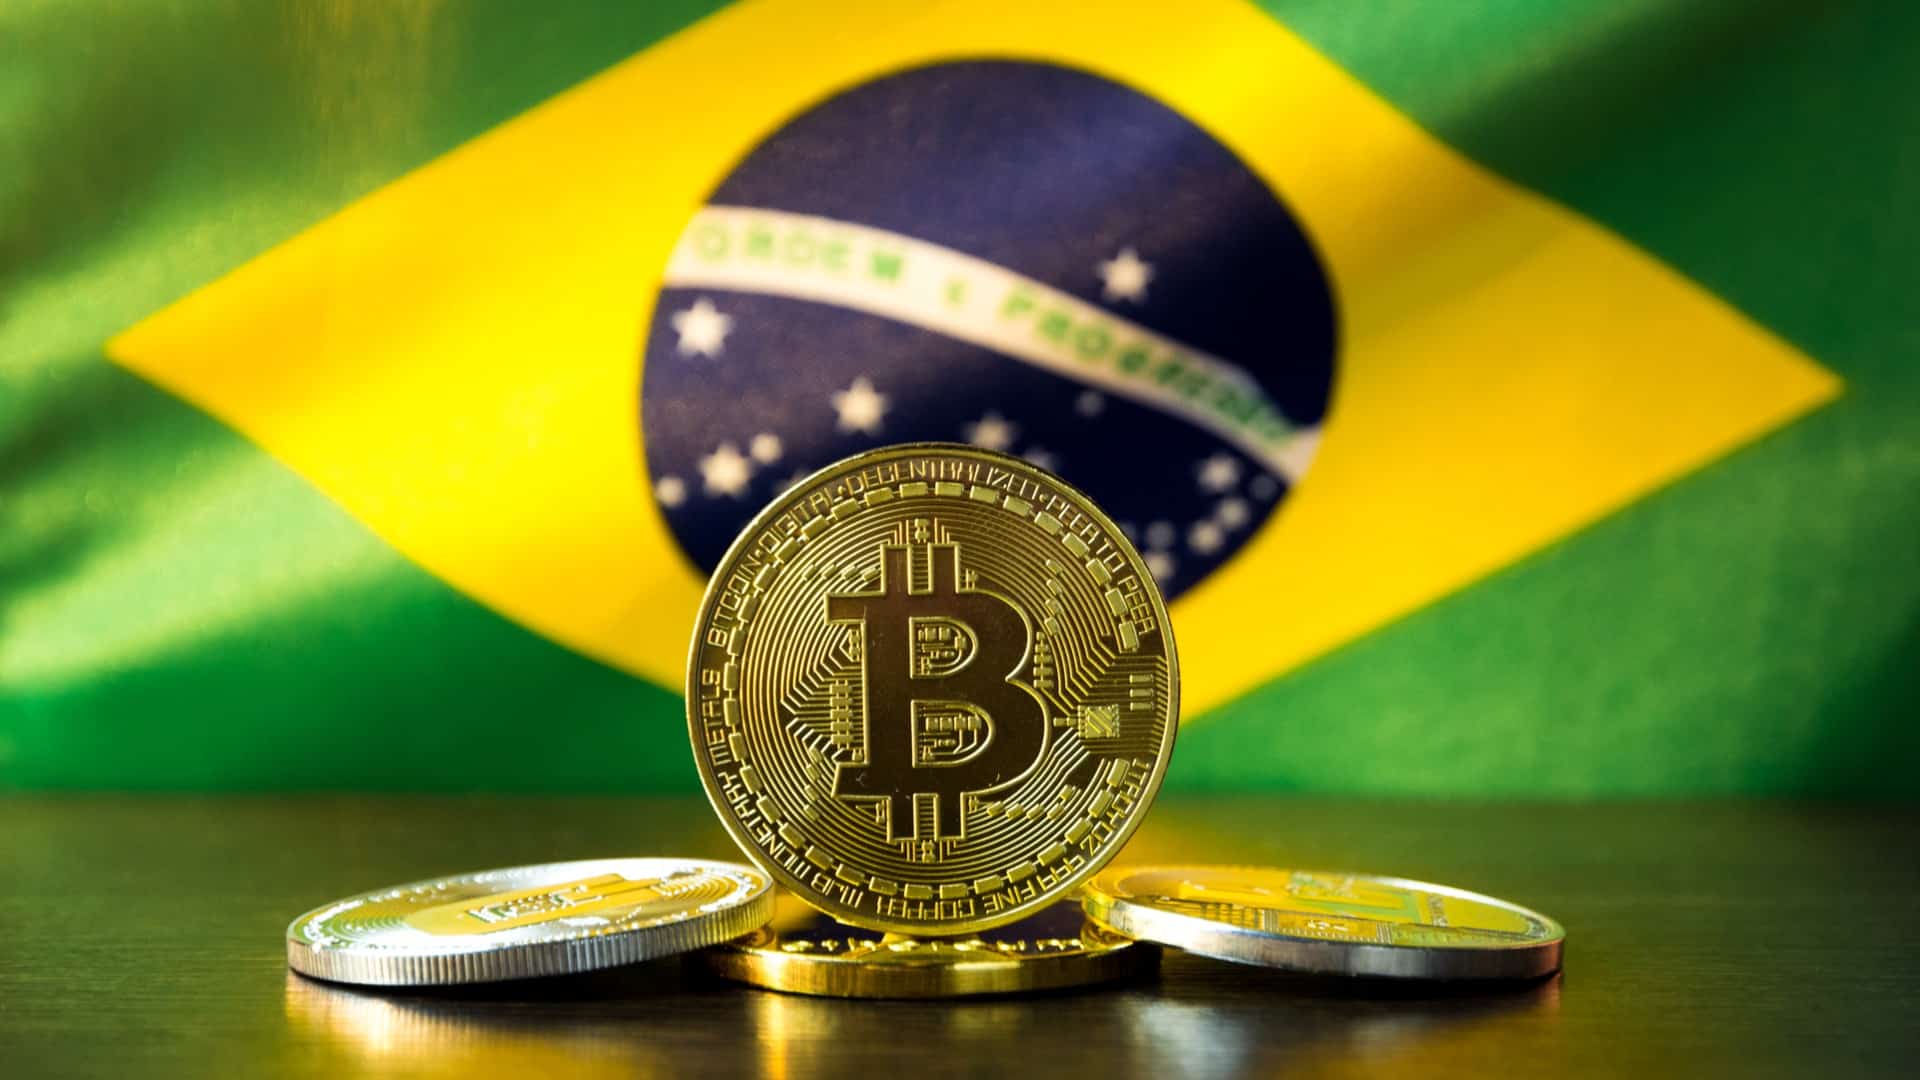 Bandeira-do-Brasil-ao-fundo-e-Bitcoin-com-criptomoedas-na-frente-.jpg